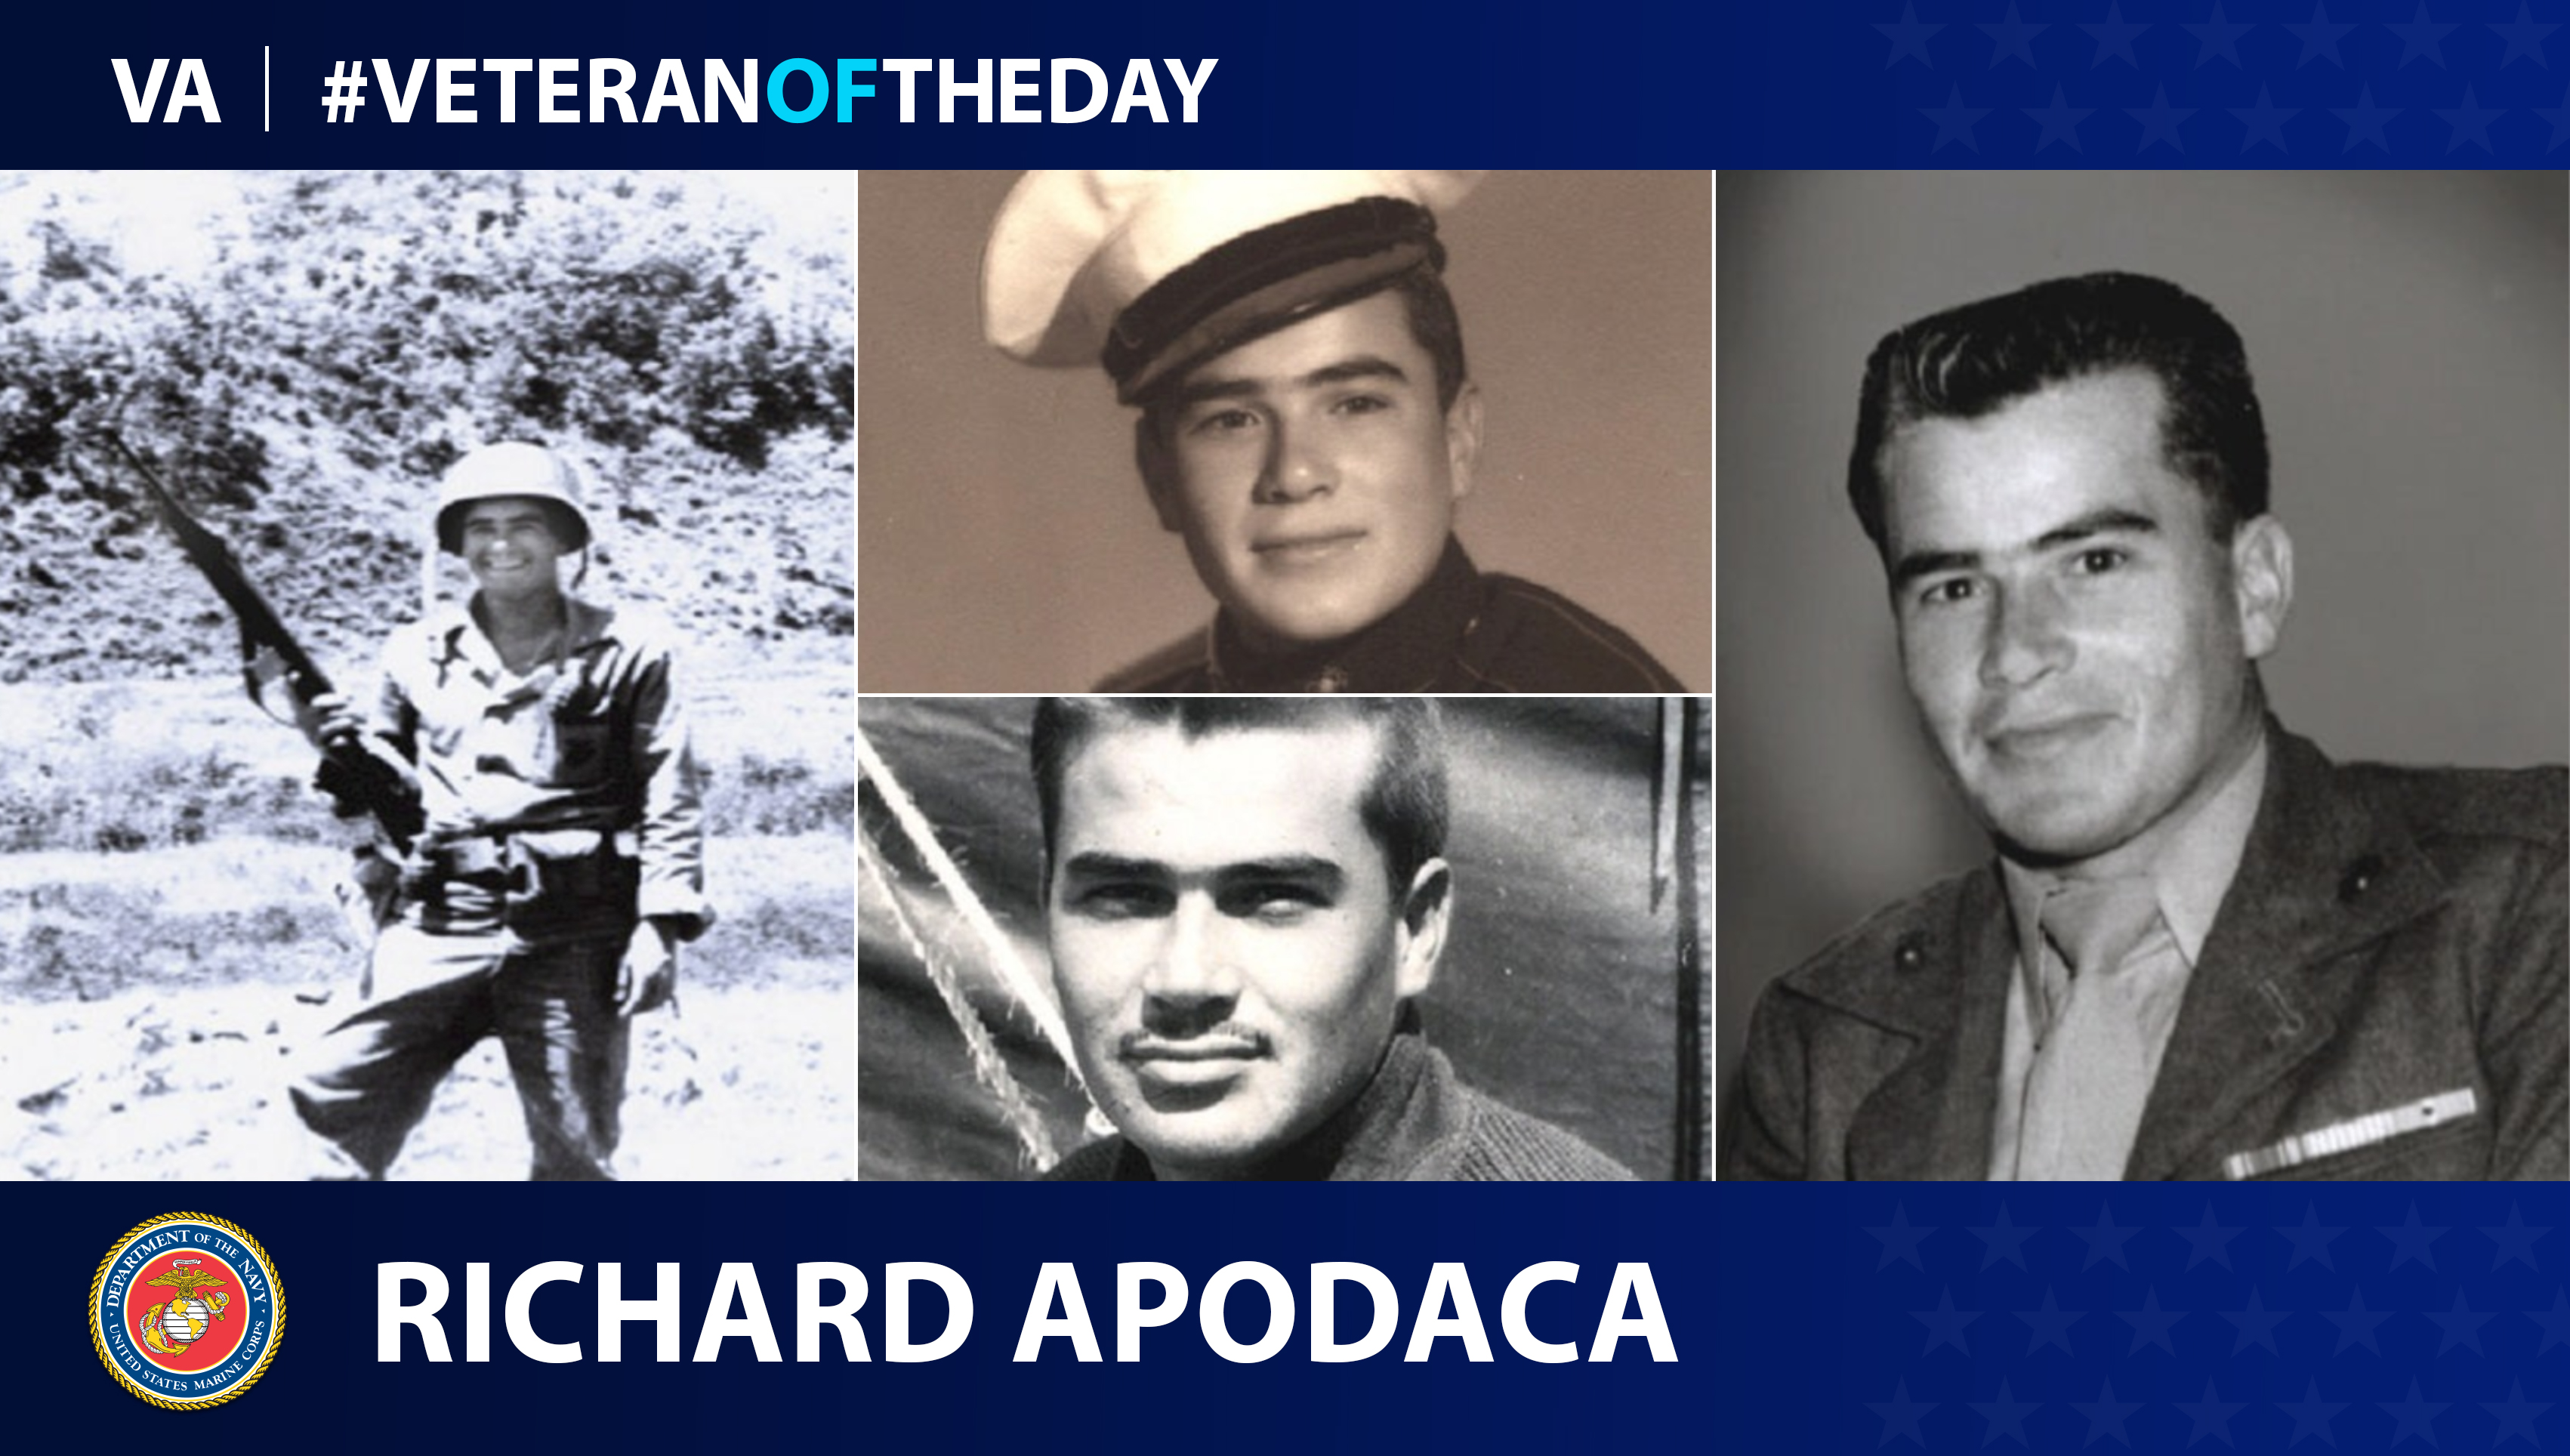 Richard Apodaca is today's #VeteranOfTheDay